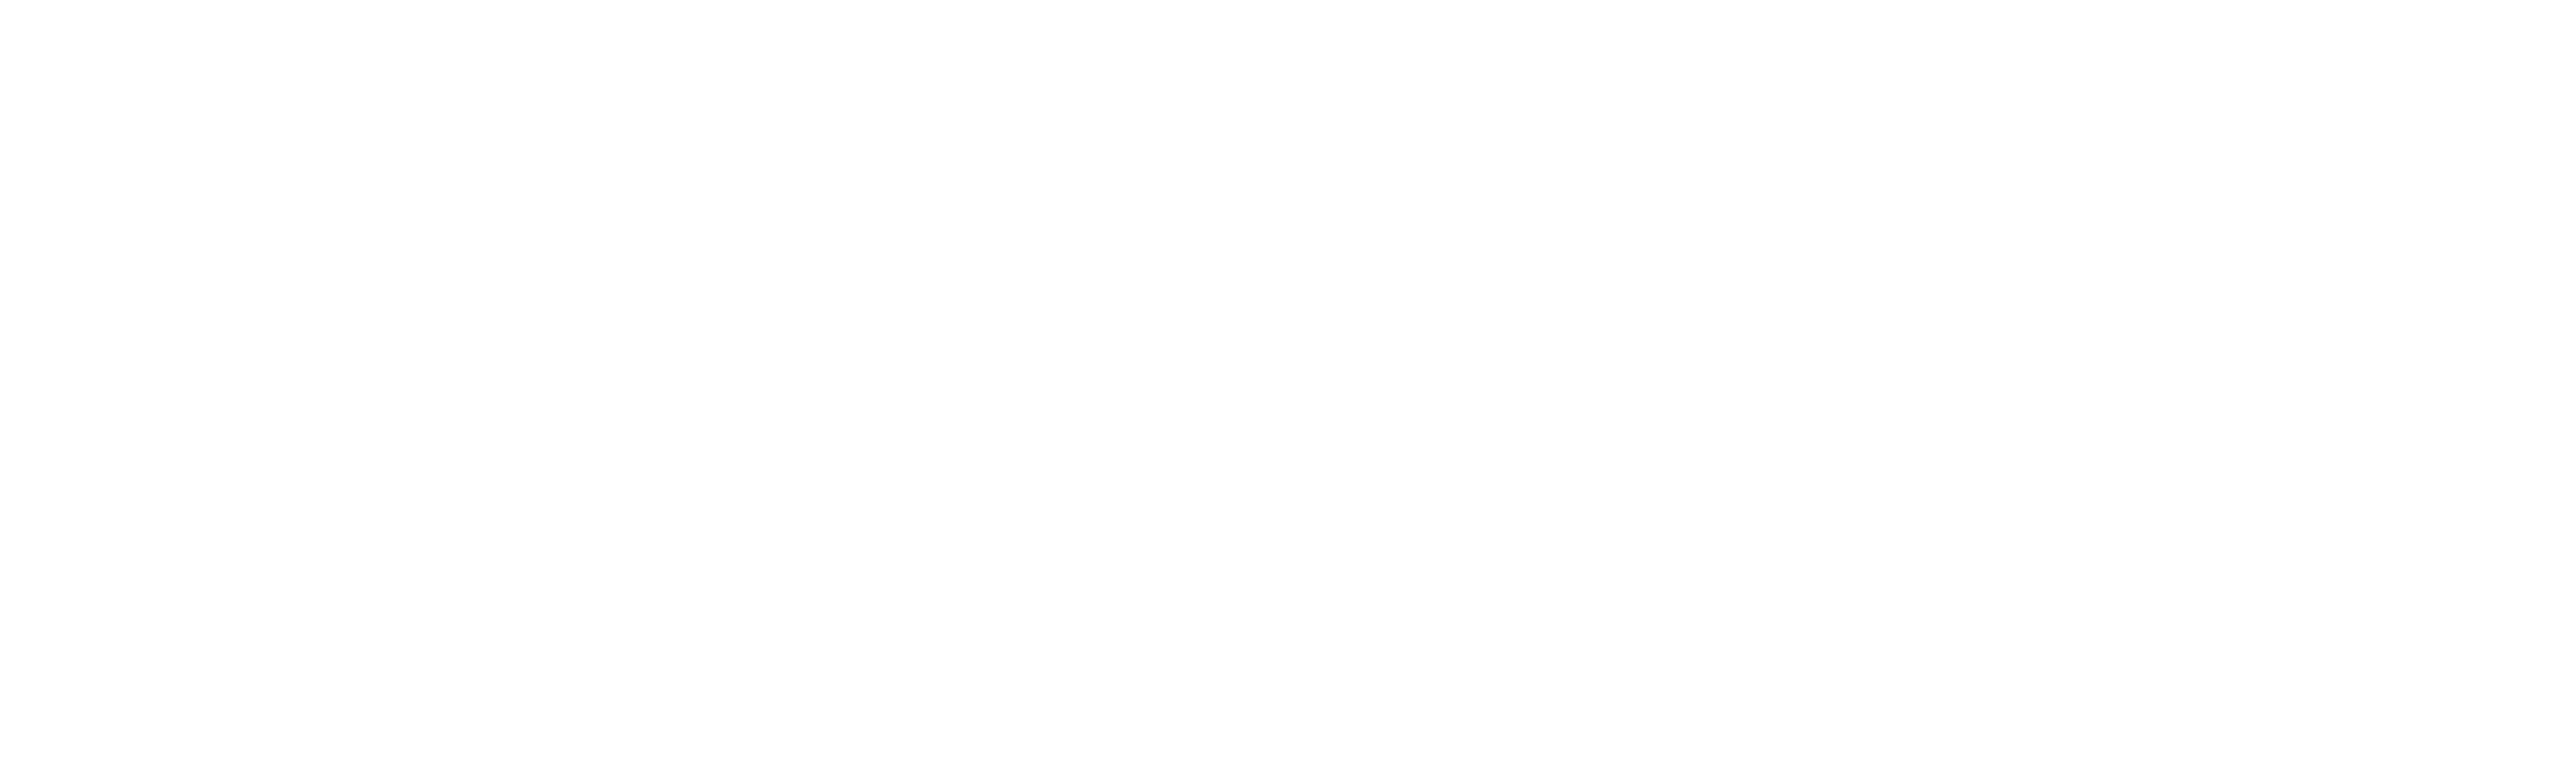 Saged logo